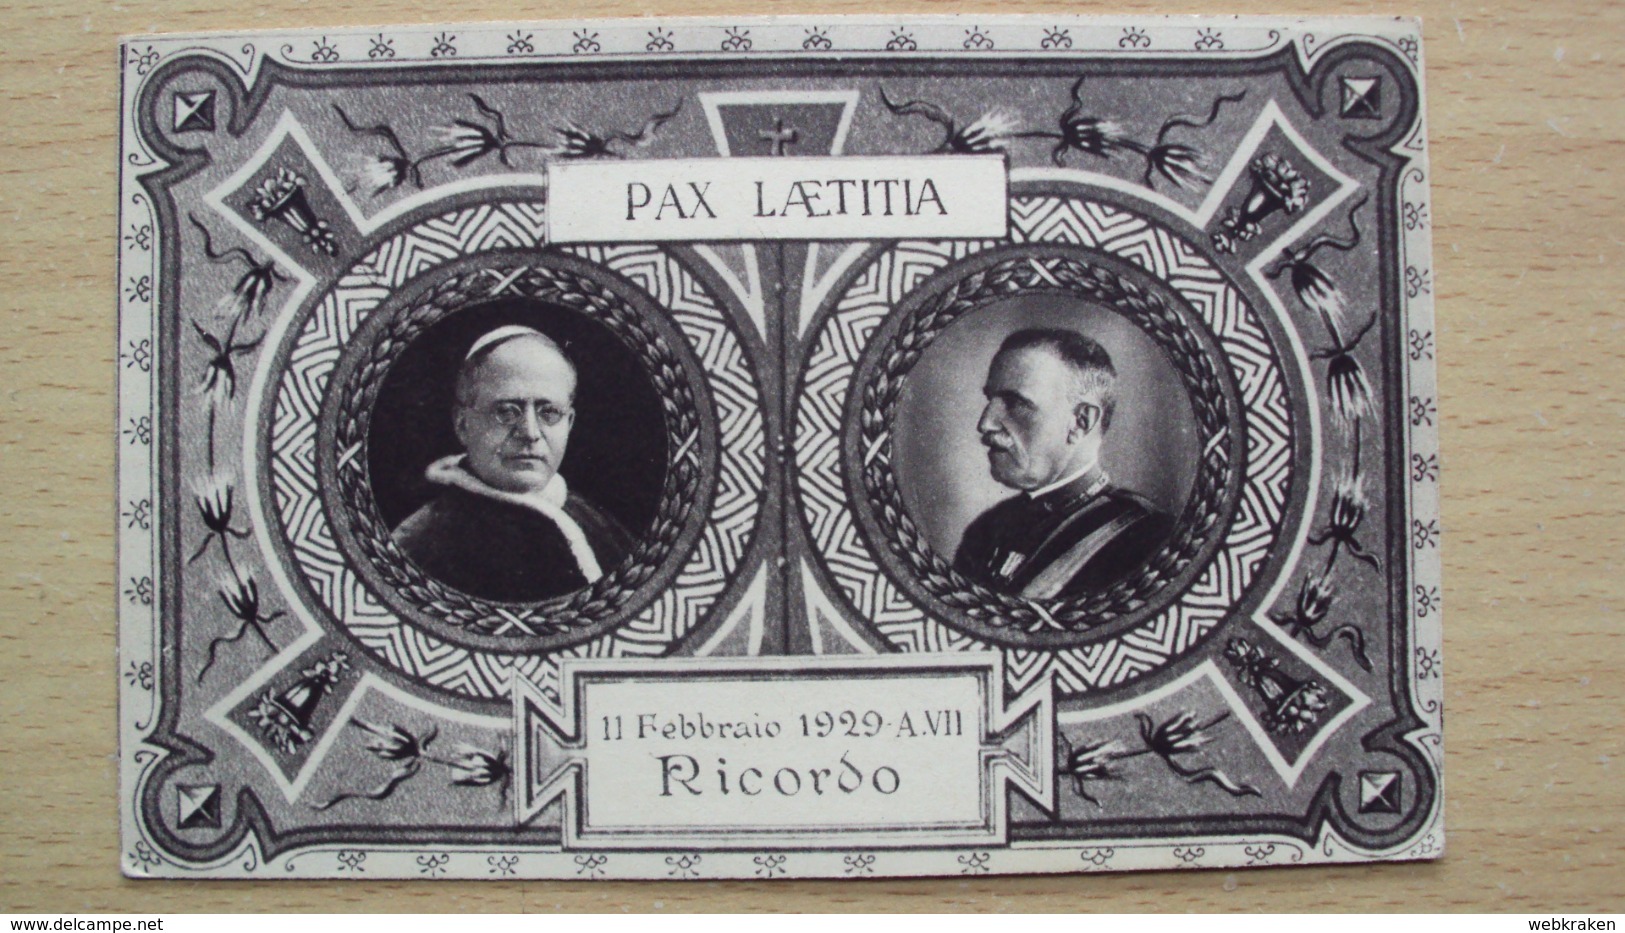 CARTOLINA REGNO VATICANO RE VITTORIO EMANUELE E PAPA PIO IX RICORDO PATTI LATERANENSI 11.02.1929 FORMATO PICCOLO - Personajes